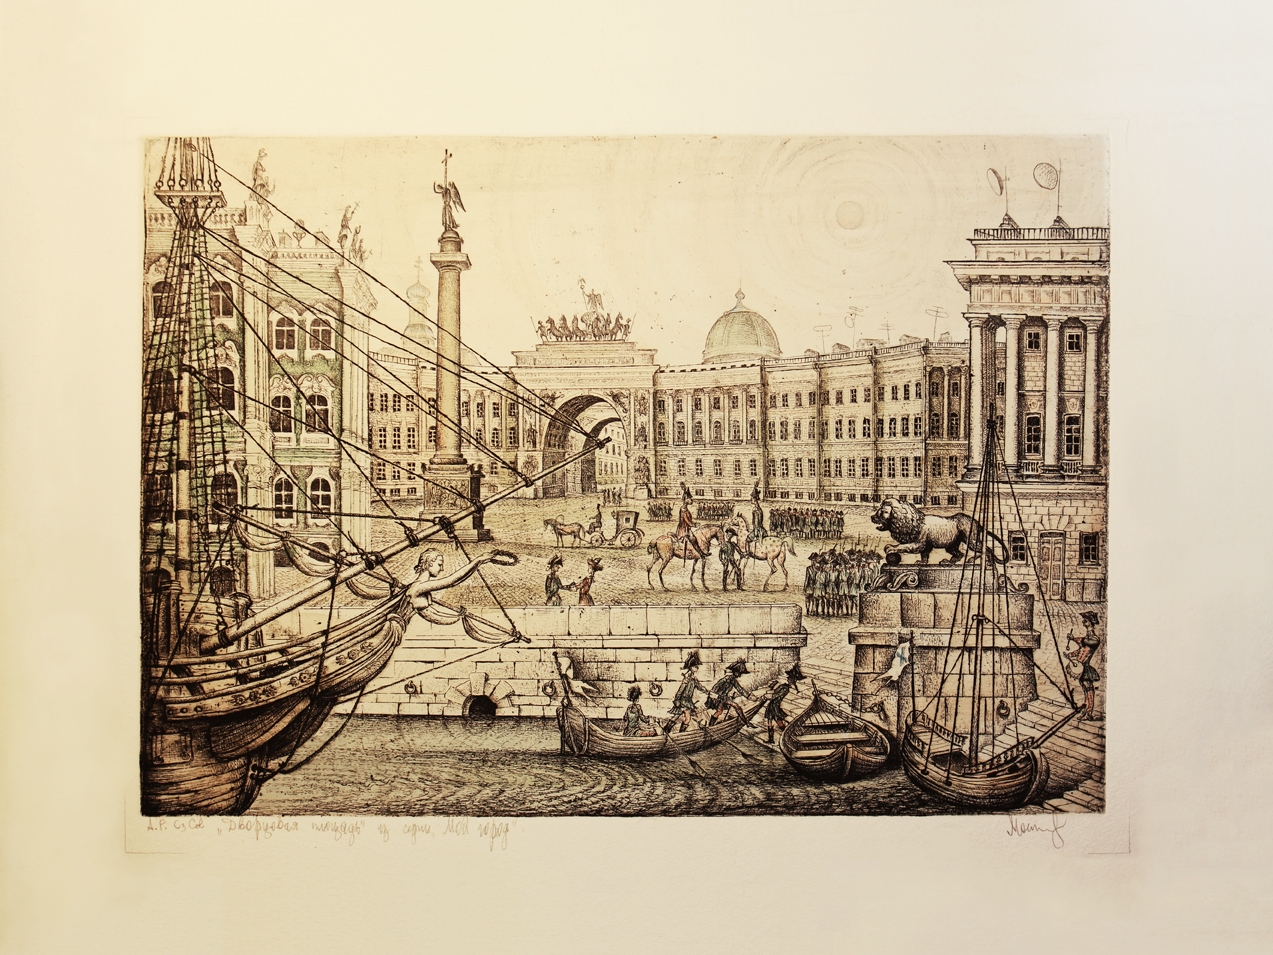 Вид Дворцовой площади со стороны реки Невы в конце XIX века. Раскрашенный офорт, 2013 год.